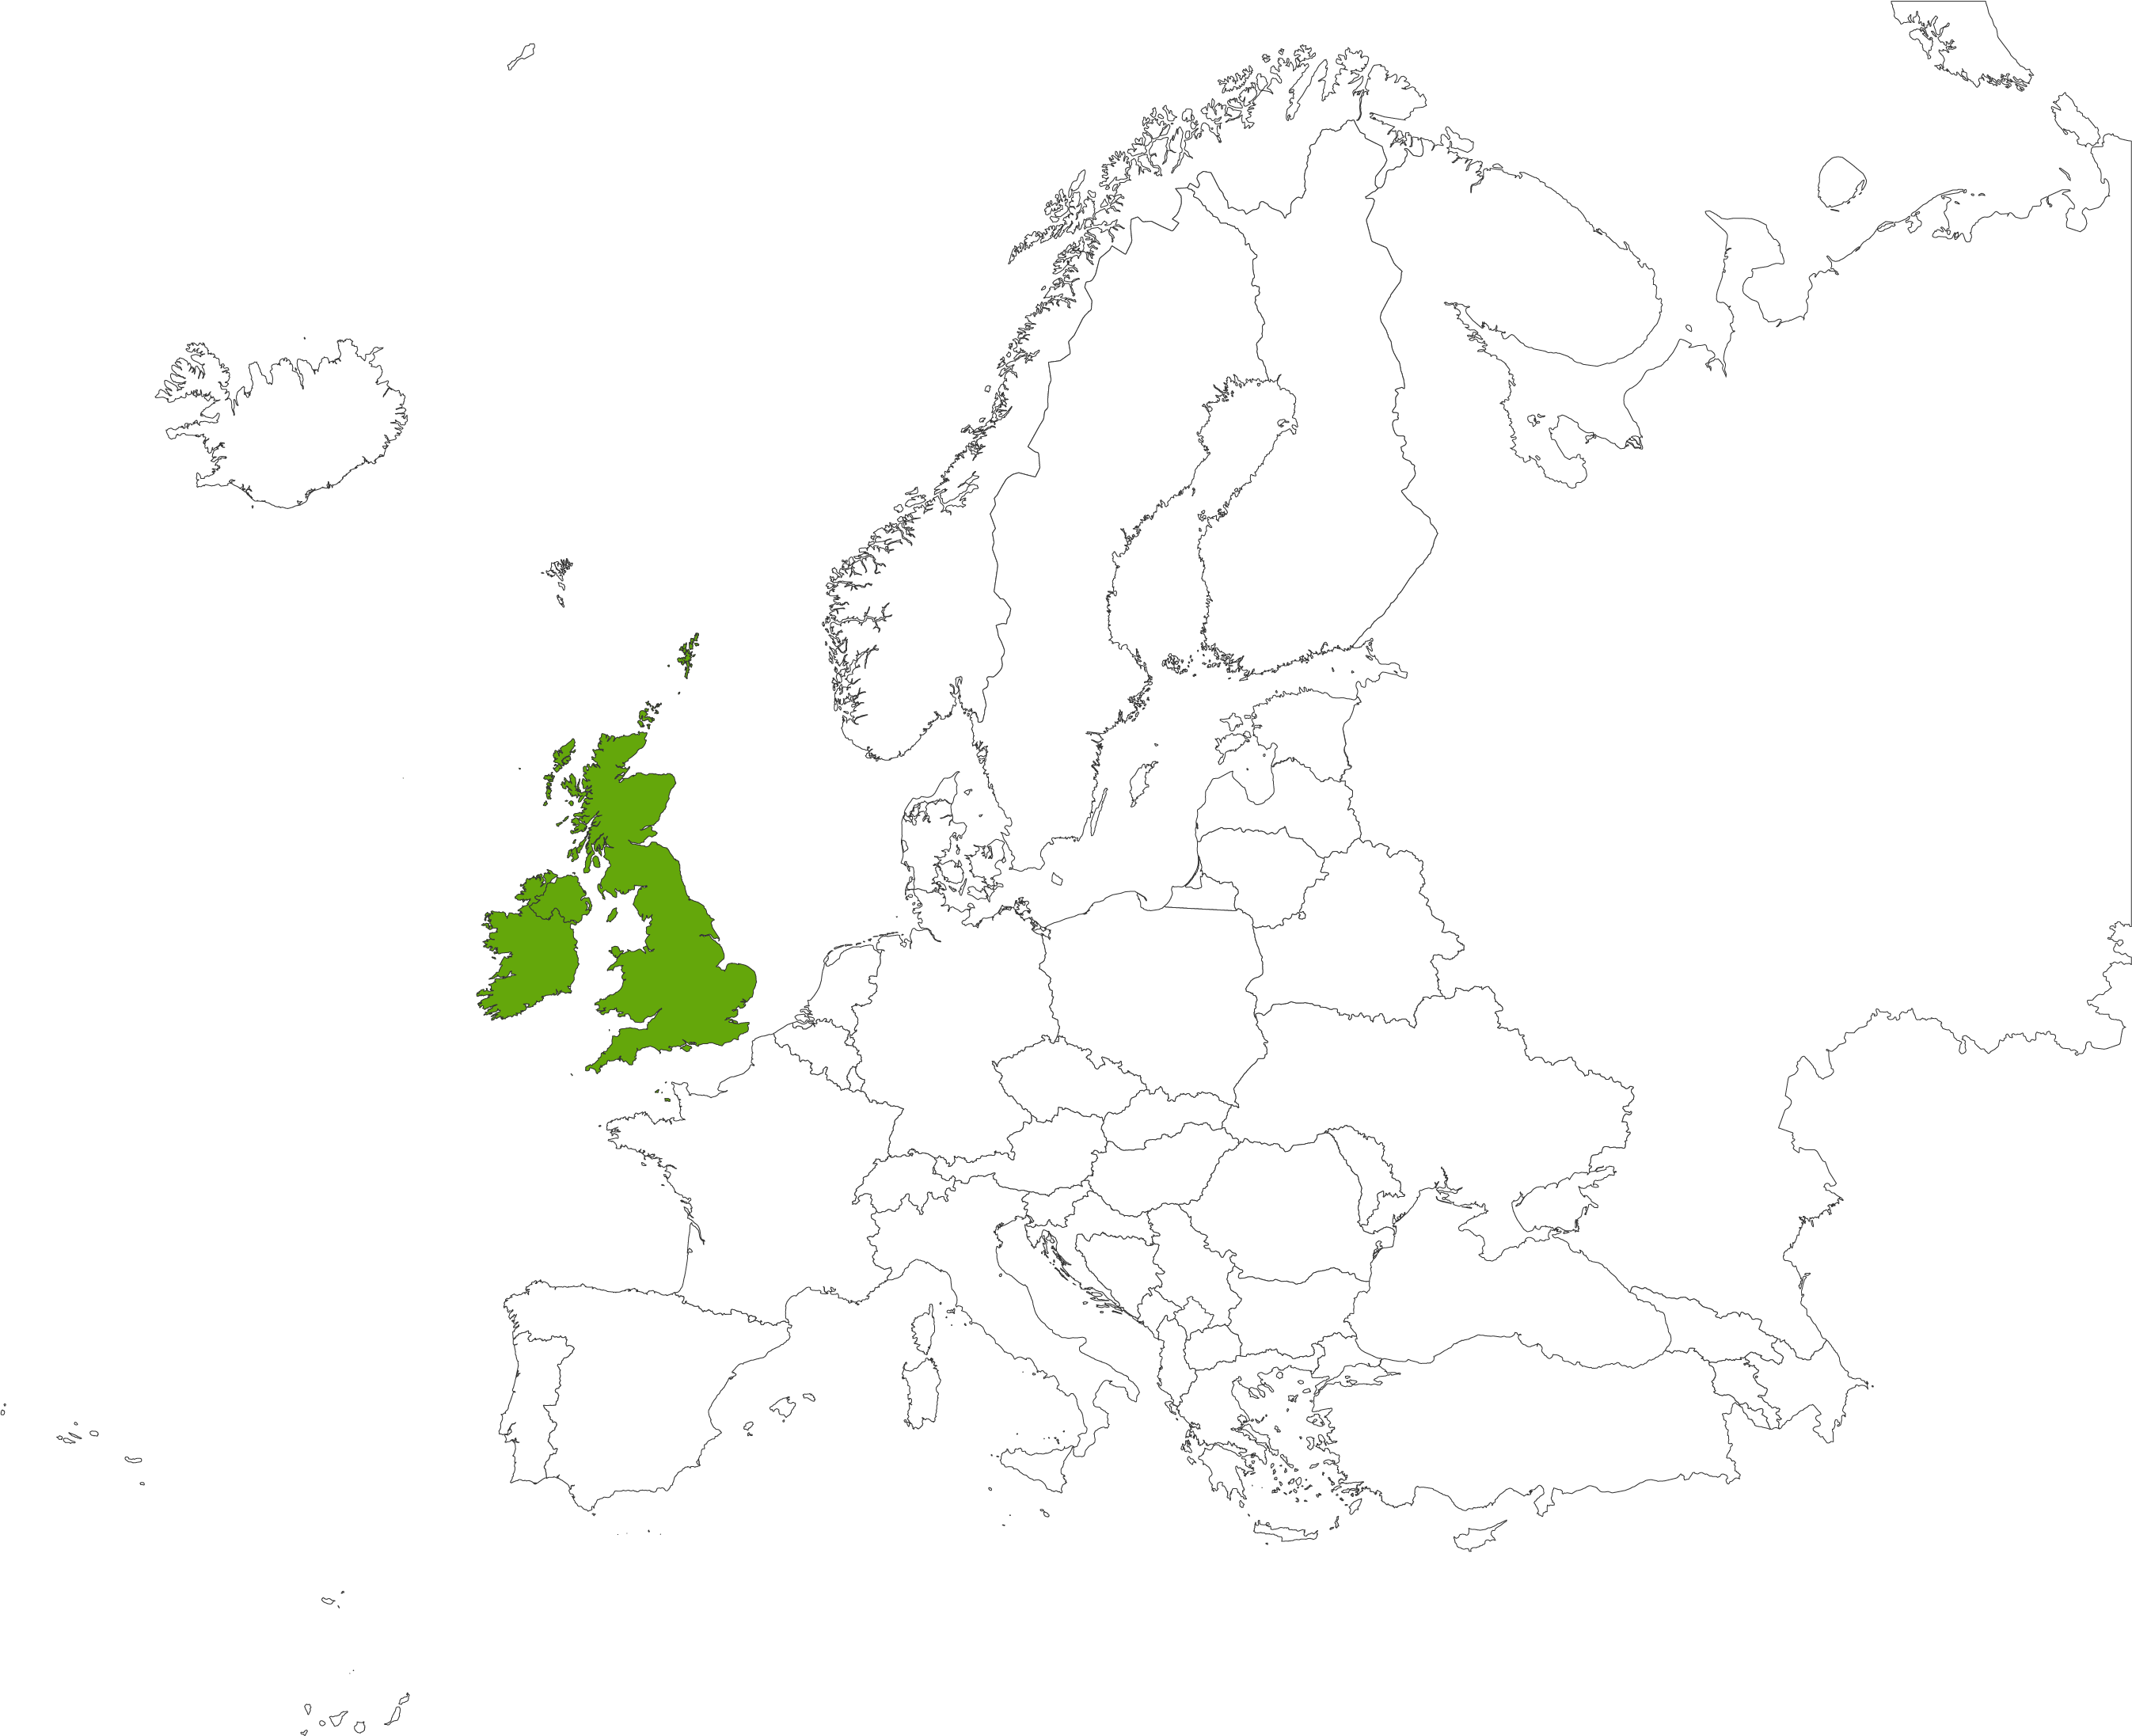 WRLD-EU-01-0003 UK and Ireland